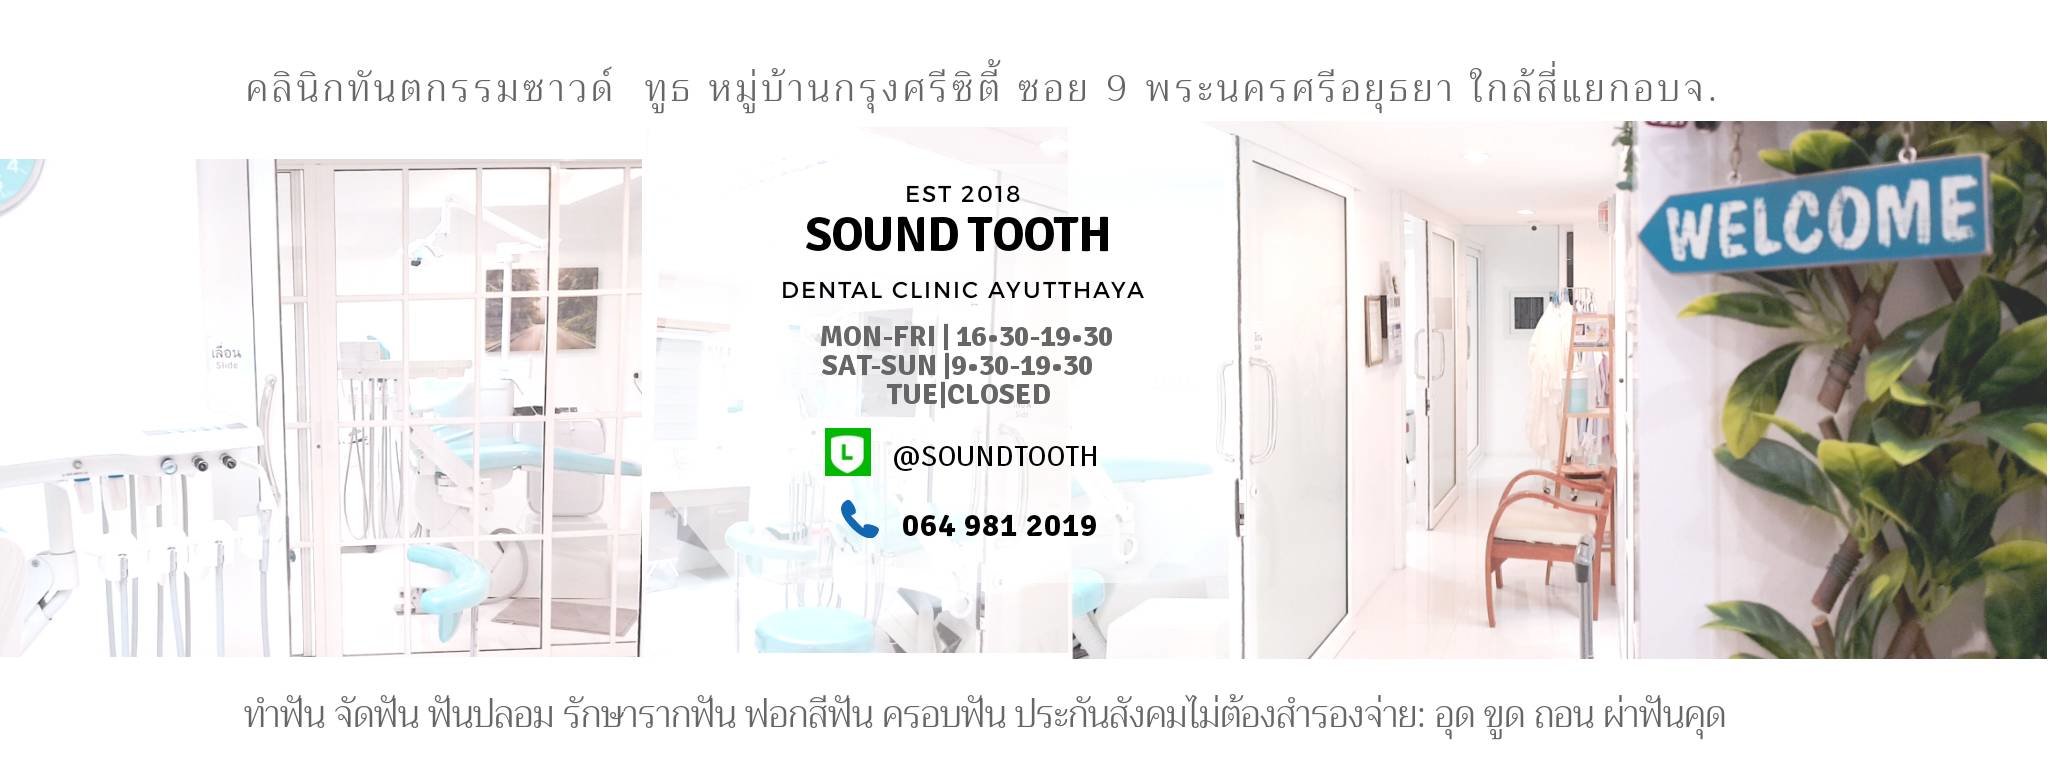 คลินิกทันตกรรม Sound tooth - amazingthailand.org